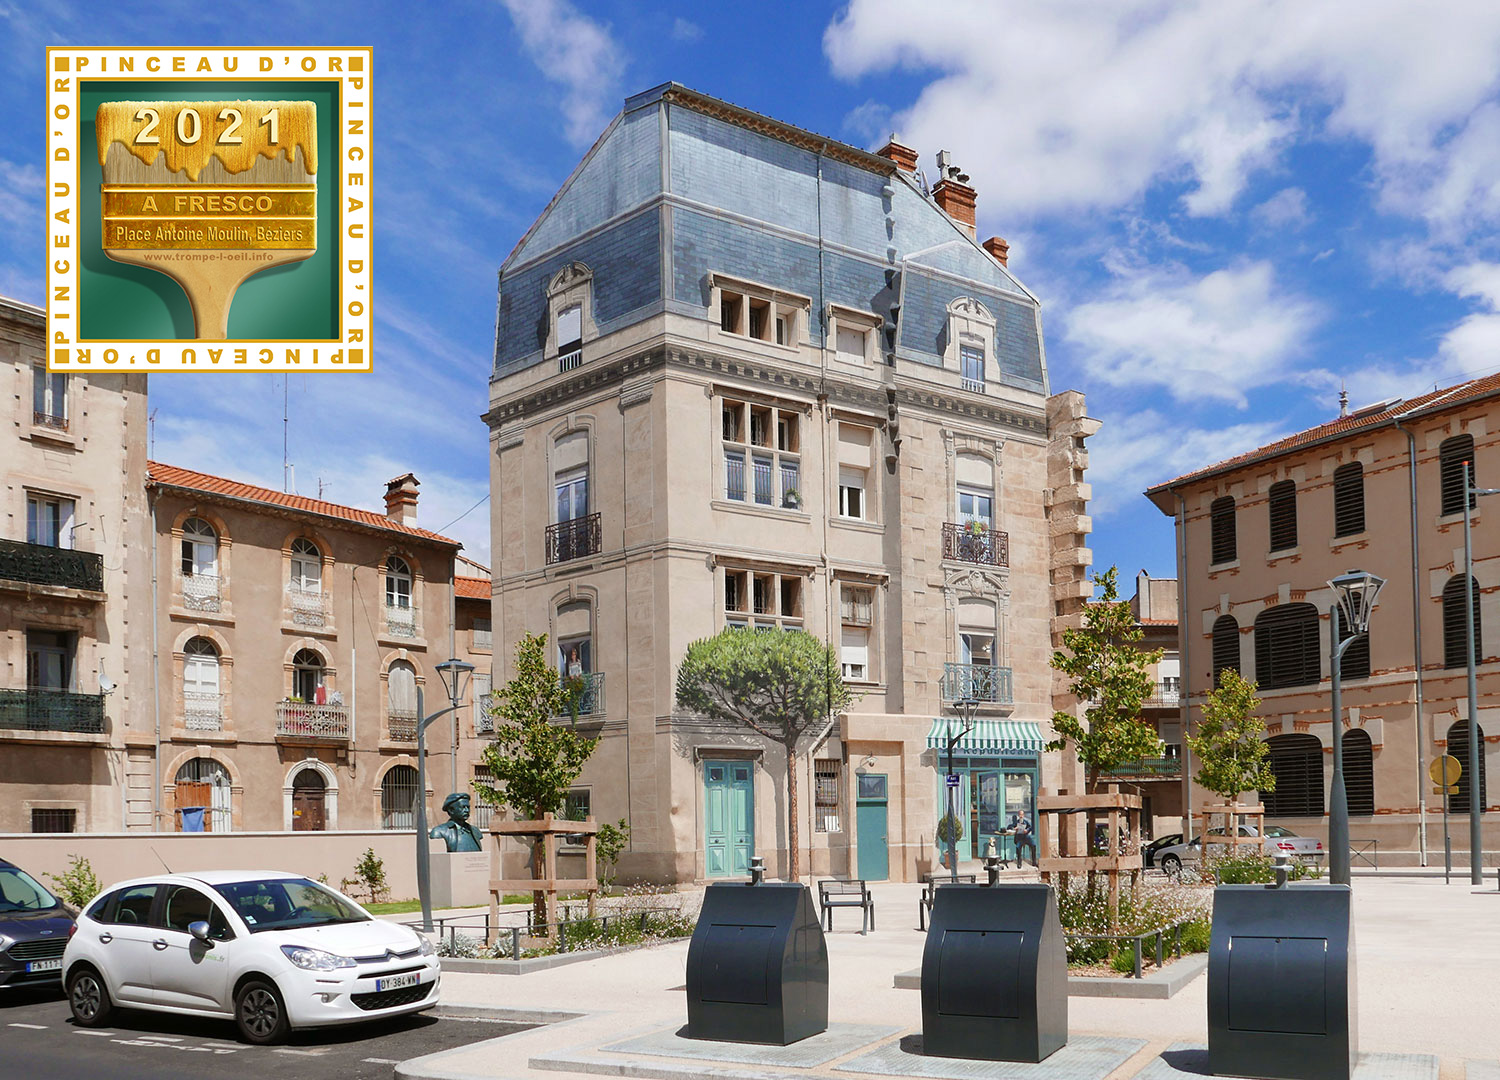 A.Fresco reçoit la distinction du Pinceau d'or 2021 pour sa fresque de 360 m² Place Antoine Emile Moulin réalisée à Béziers